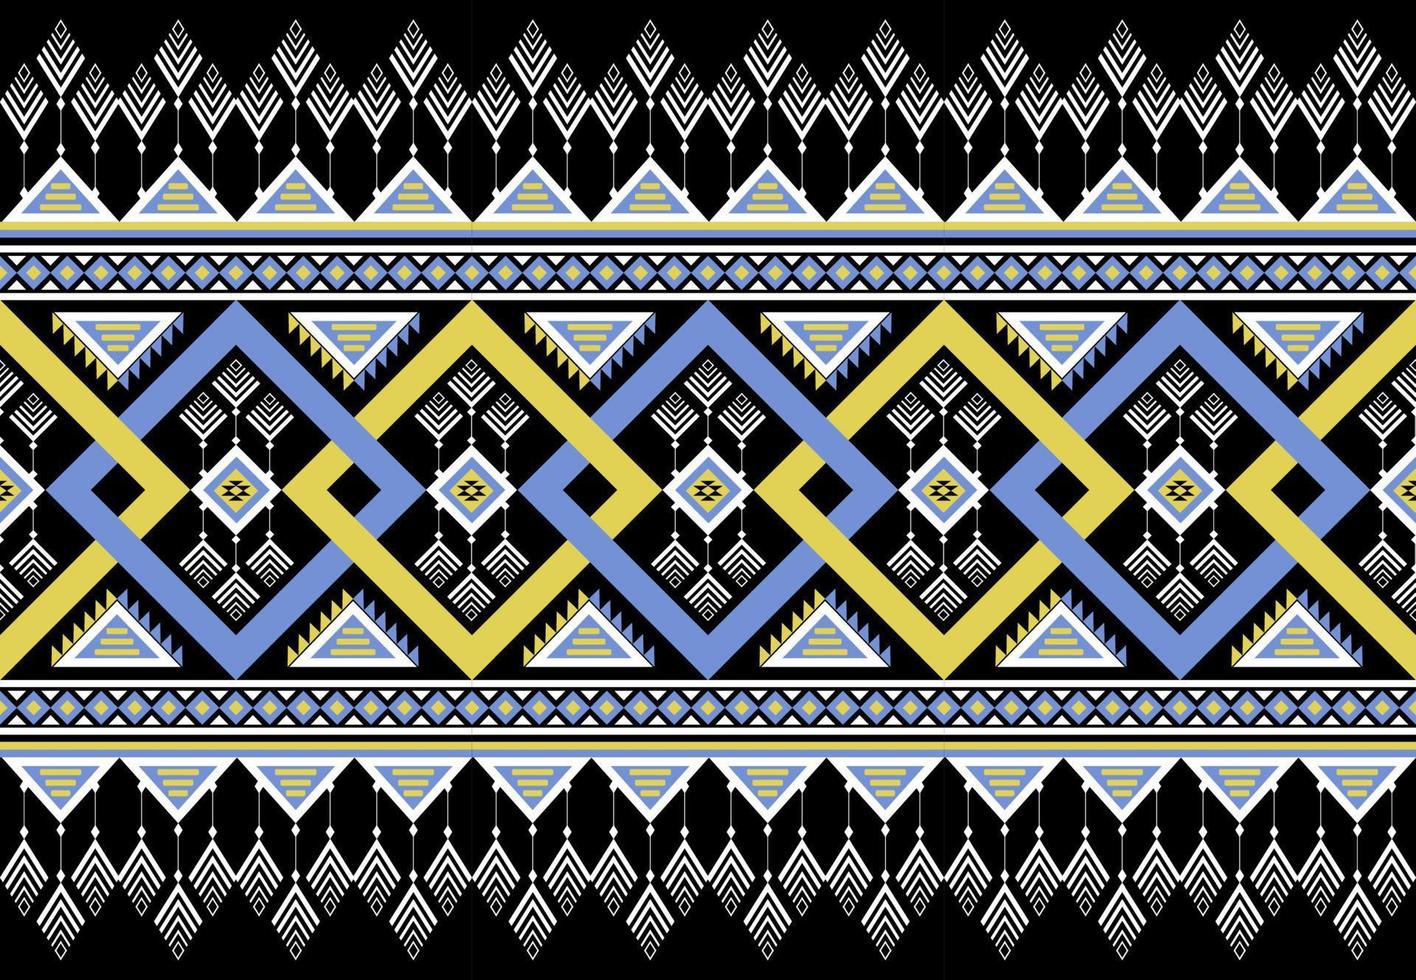 gemetriska etniska orientaliska mönster traditionell design för bakgrund, matta, tapeter, kläder, inslagning, batik, tyg, vektor illustraion.broderi stil.